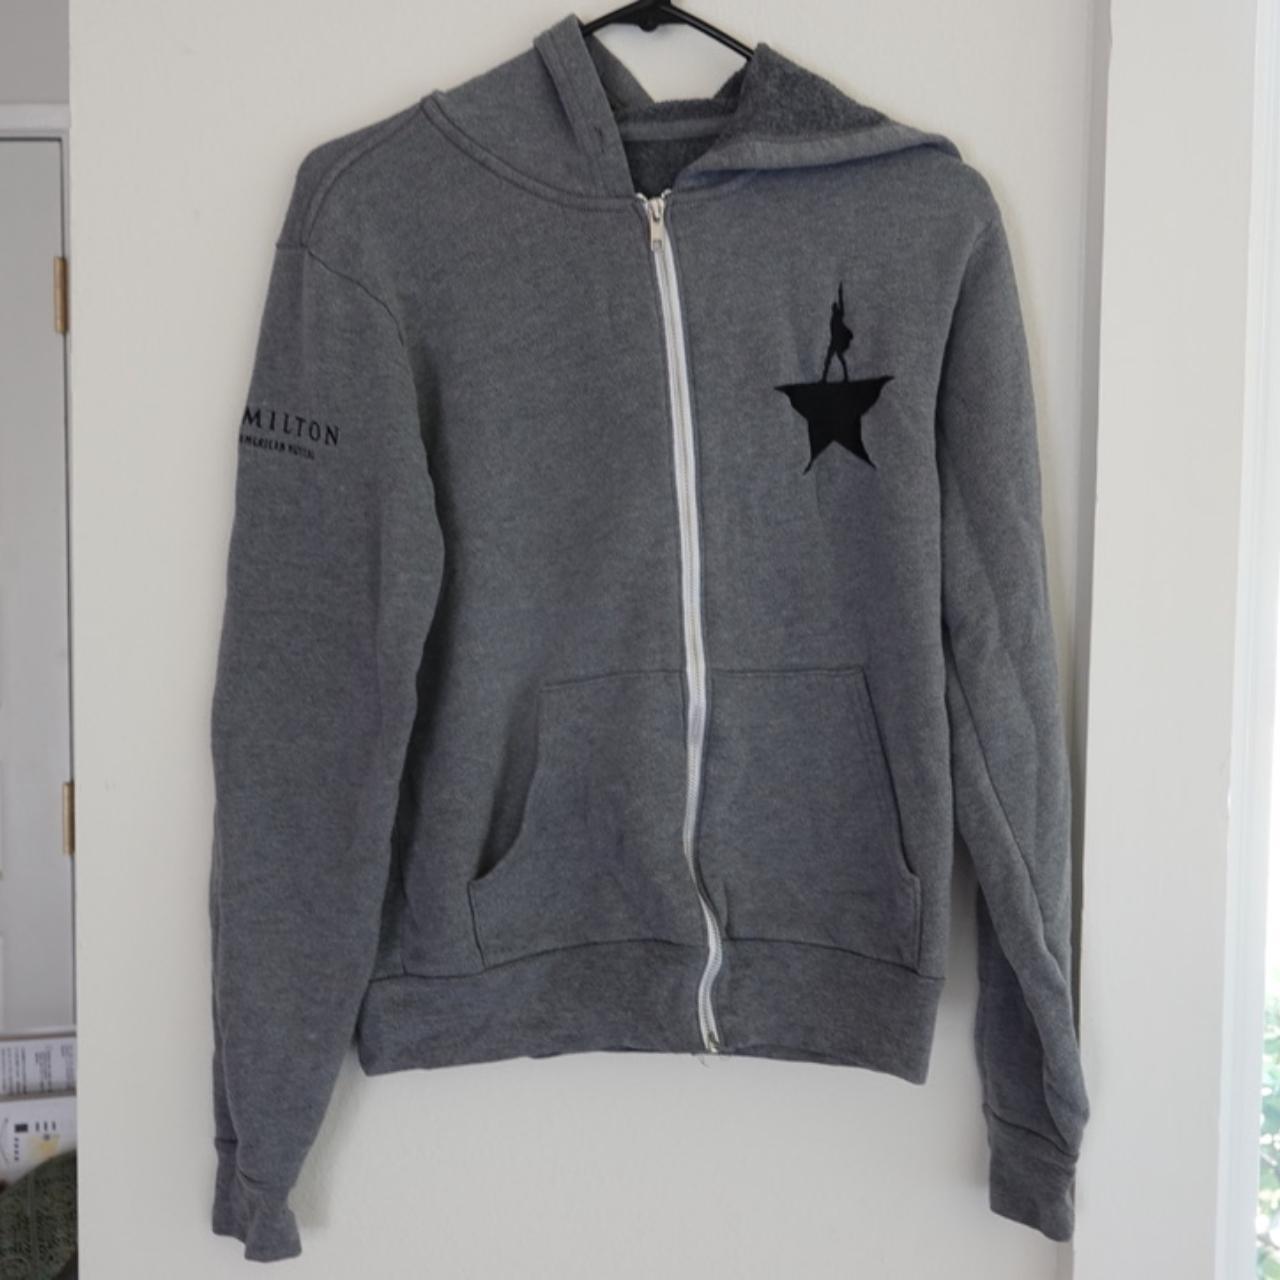 Product Image 1 - Grey Alexander Hamilton zip-up hoodie.